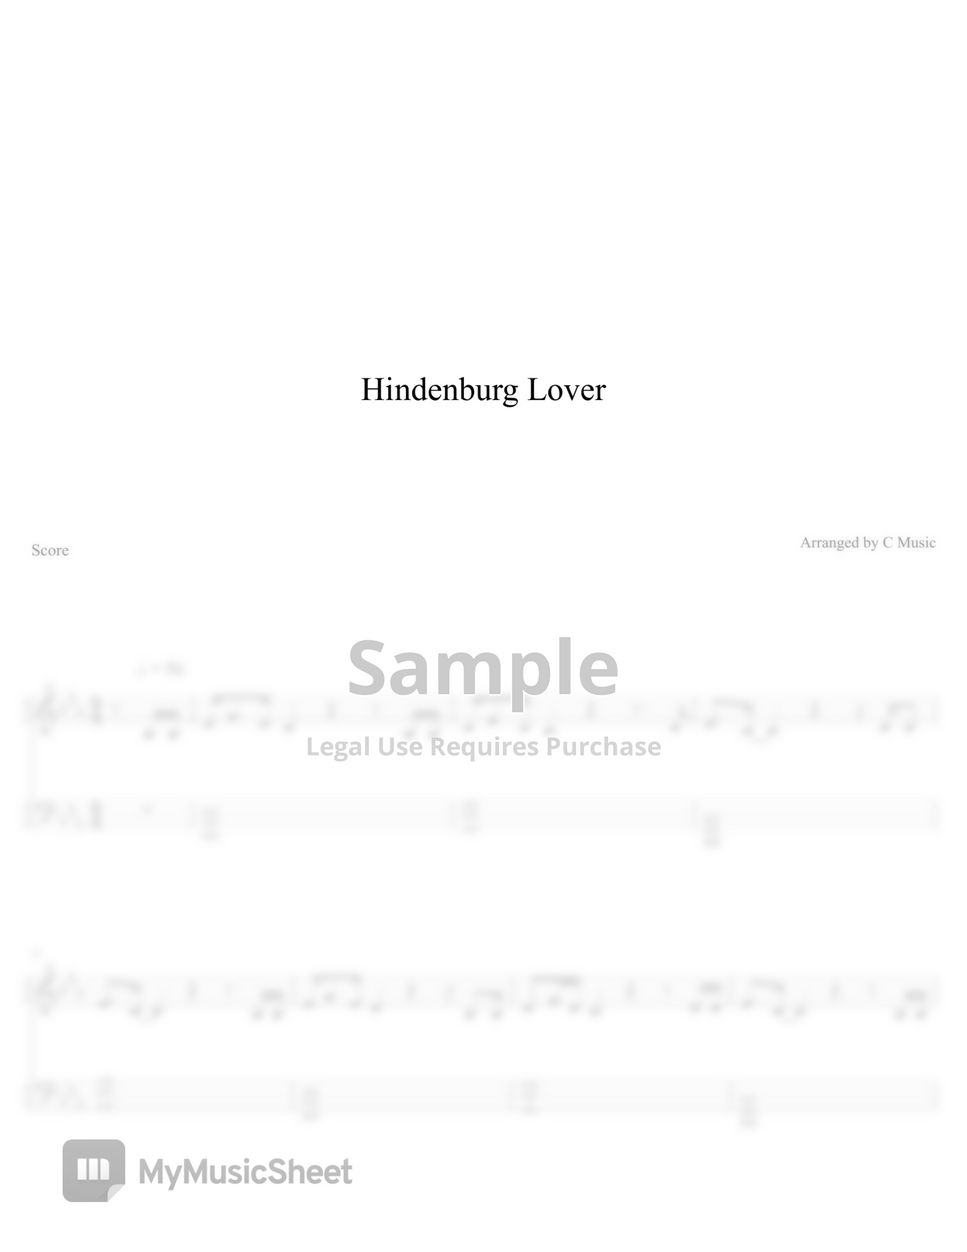 Anson Seabra - Hindenburg Lover by C Music